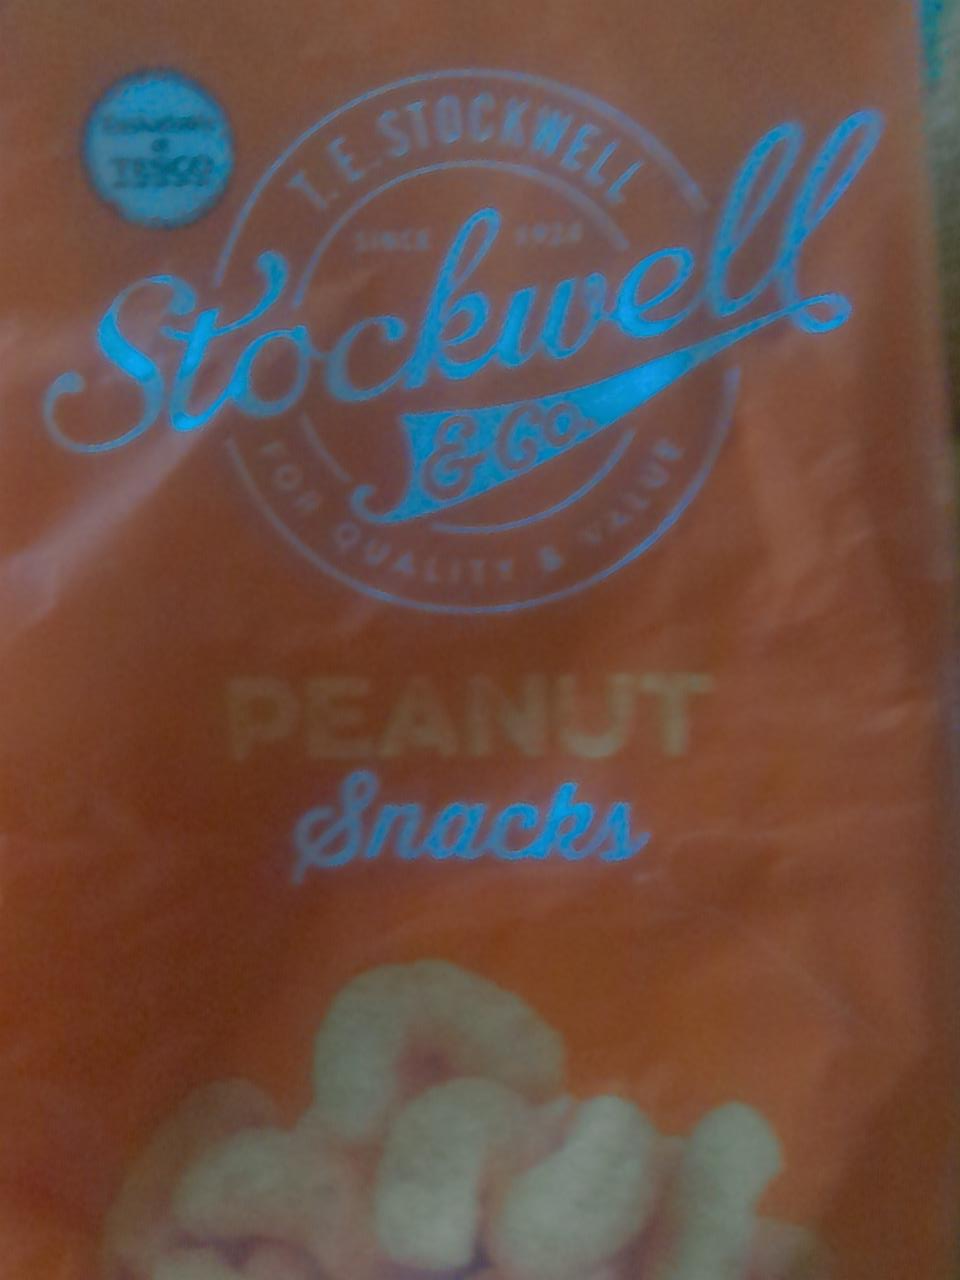 Képek - Peanut snacks Stockwell & Co.